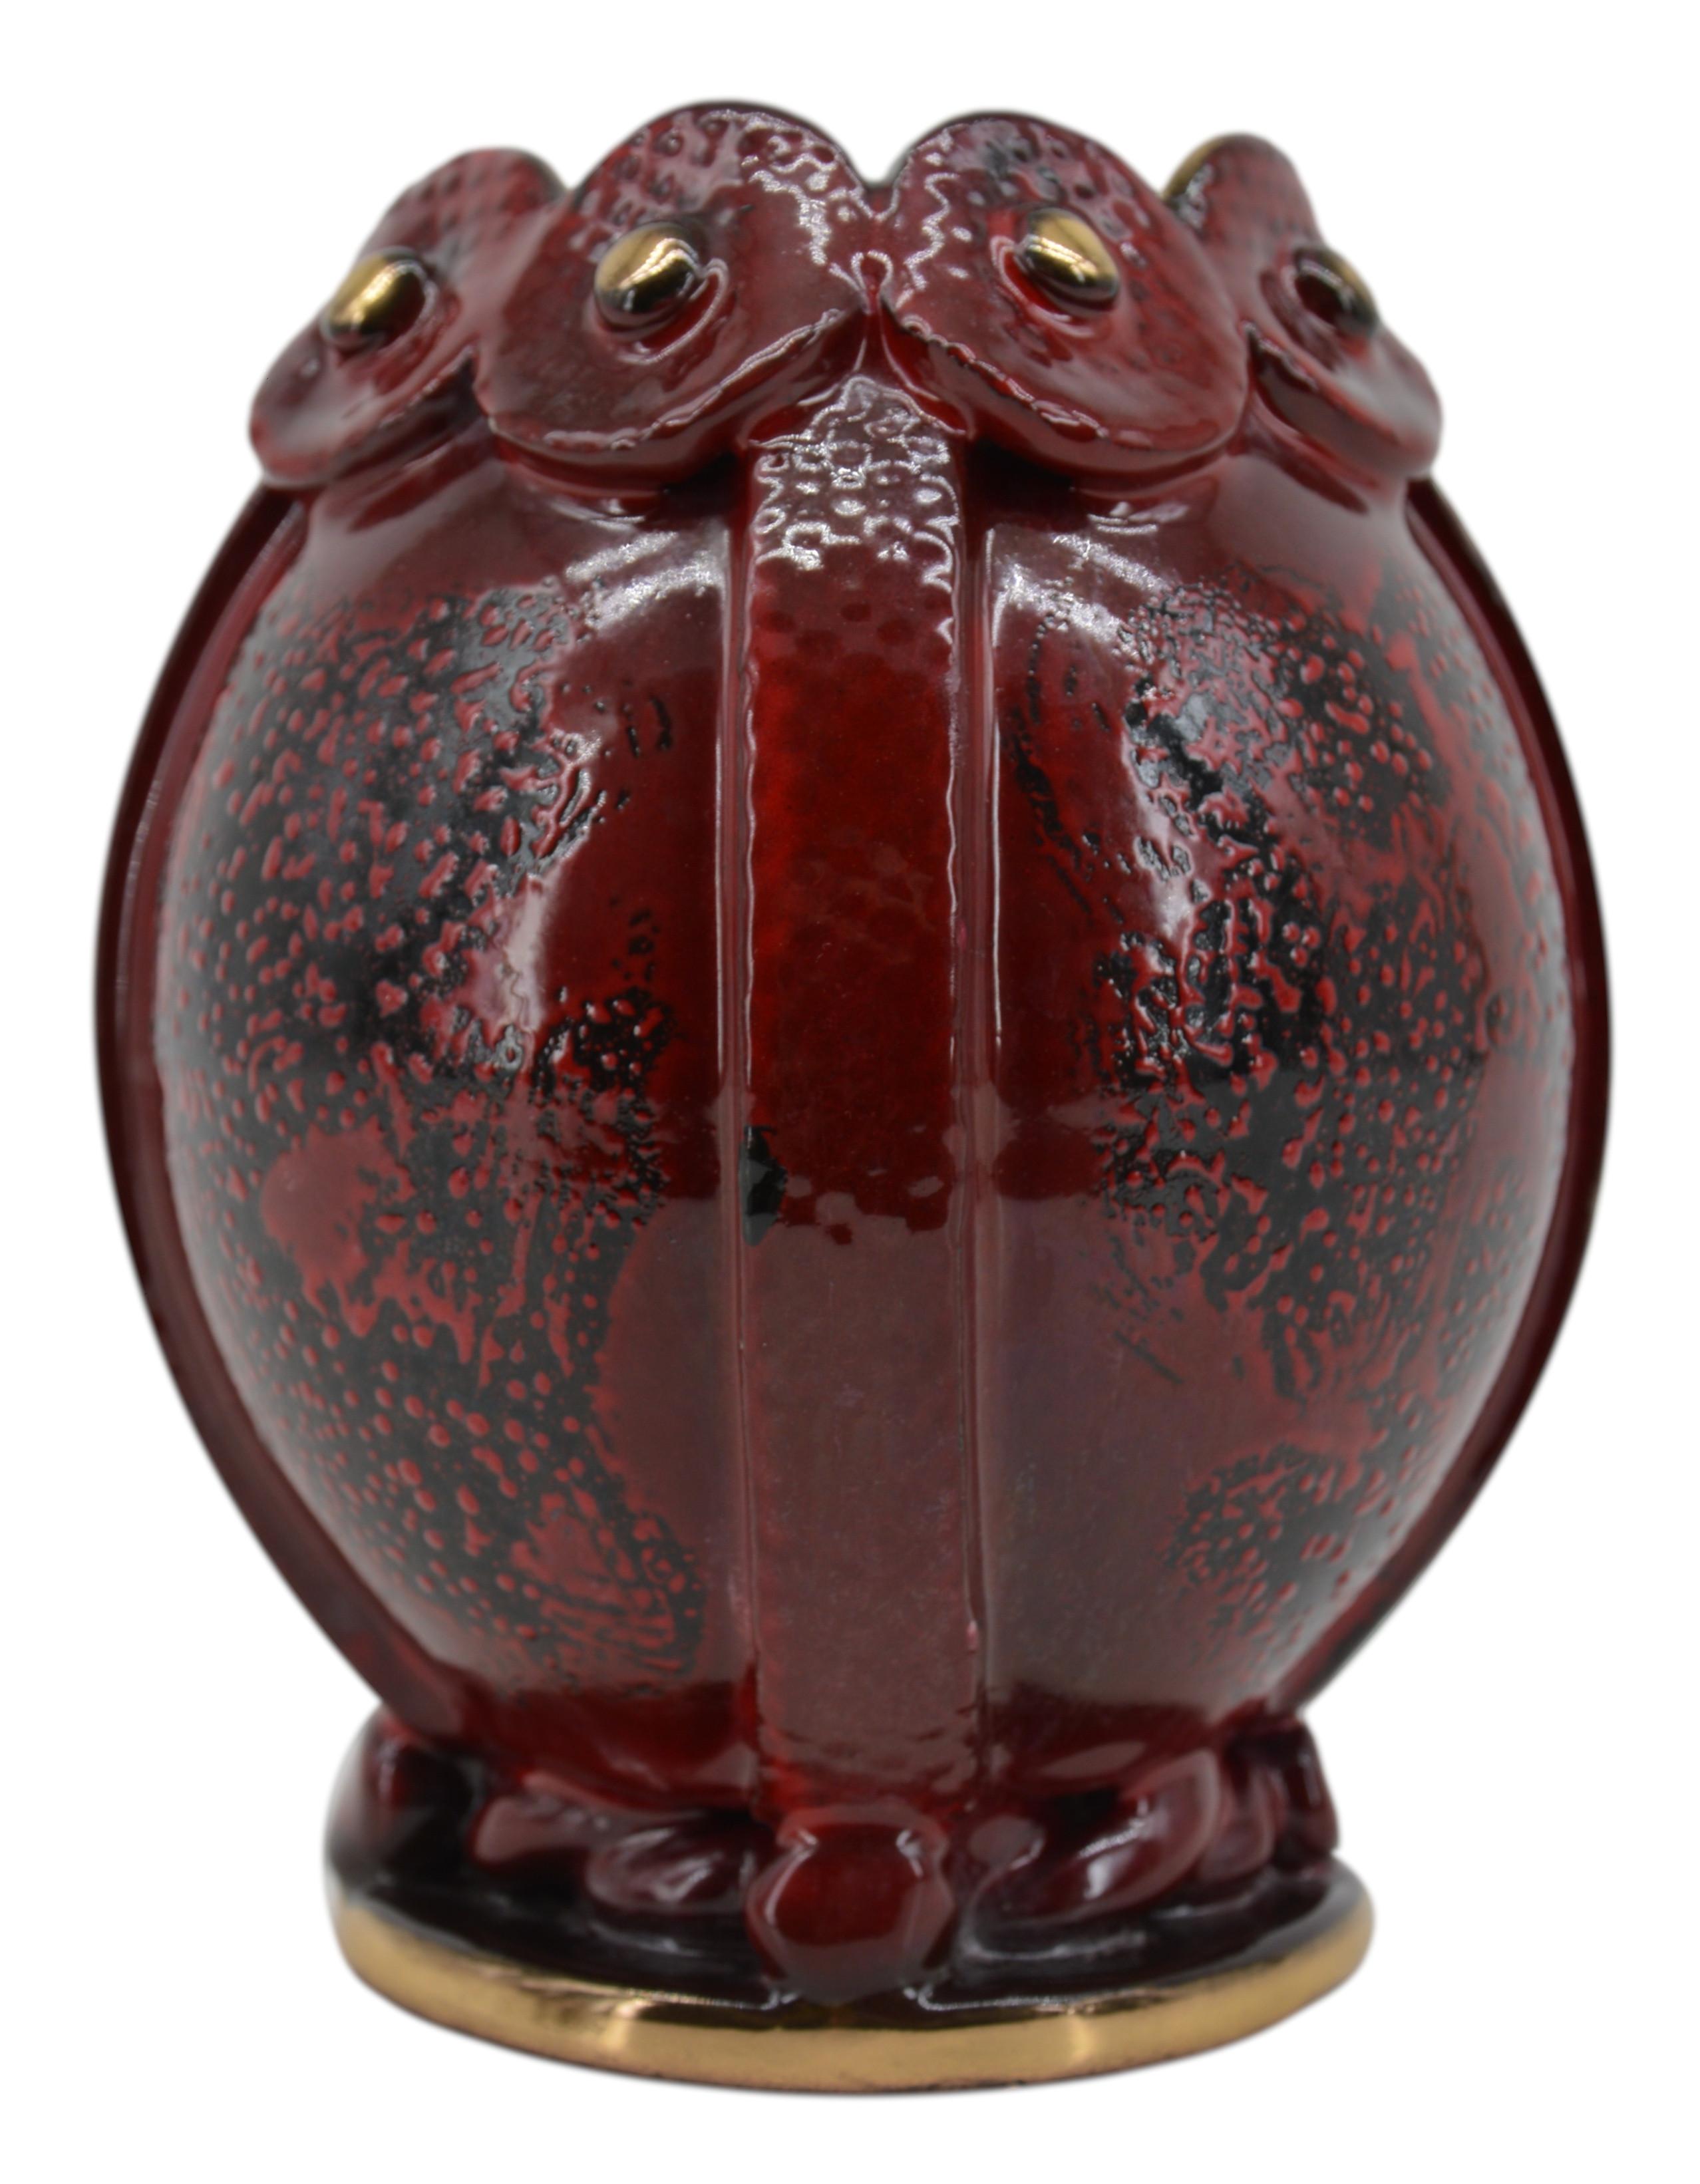 Französische Art-Déco-Vase von Louis Dage (Anthony, Paris), Frankreich, ca. 1930. Steingut. Hervorragende Farbkombinationen aus Oxblood, Schwarz und Gold. Innen schwarz. Maße: Höhe: 16,5 cm (6,5